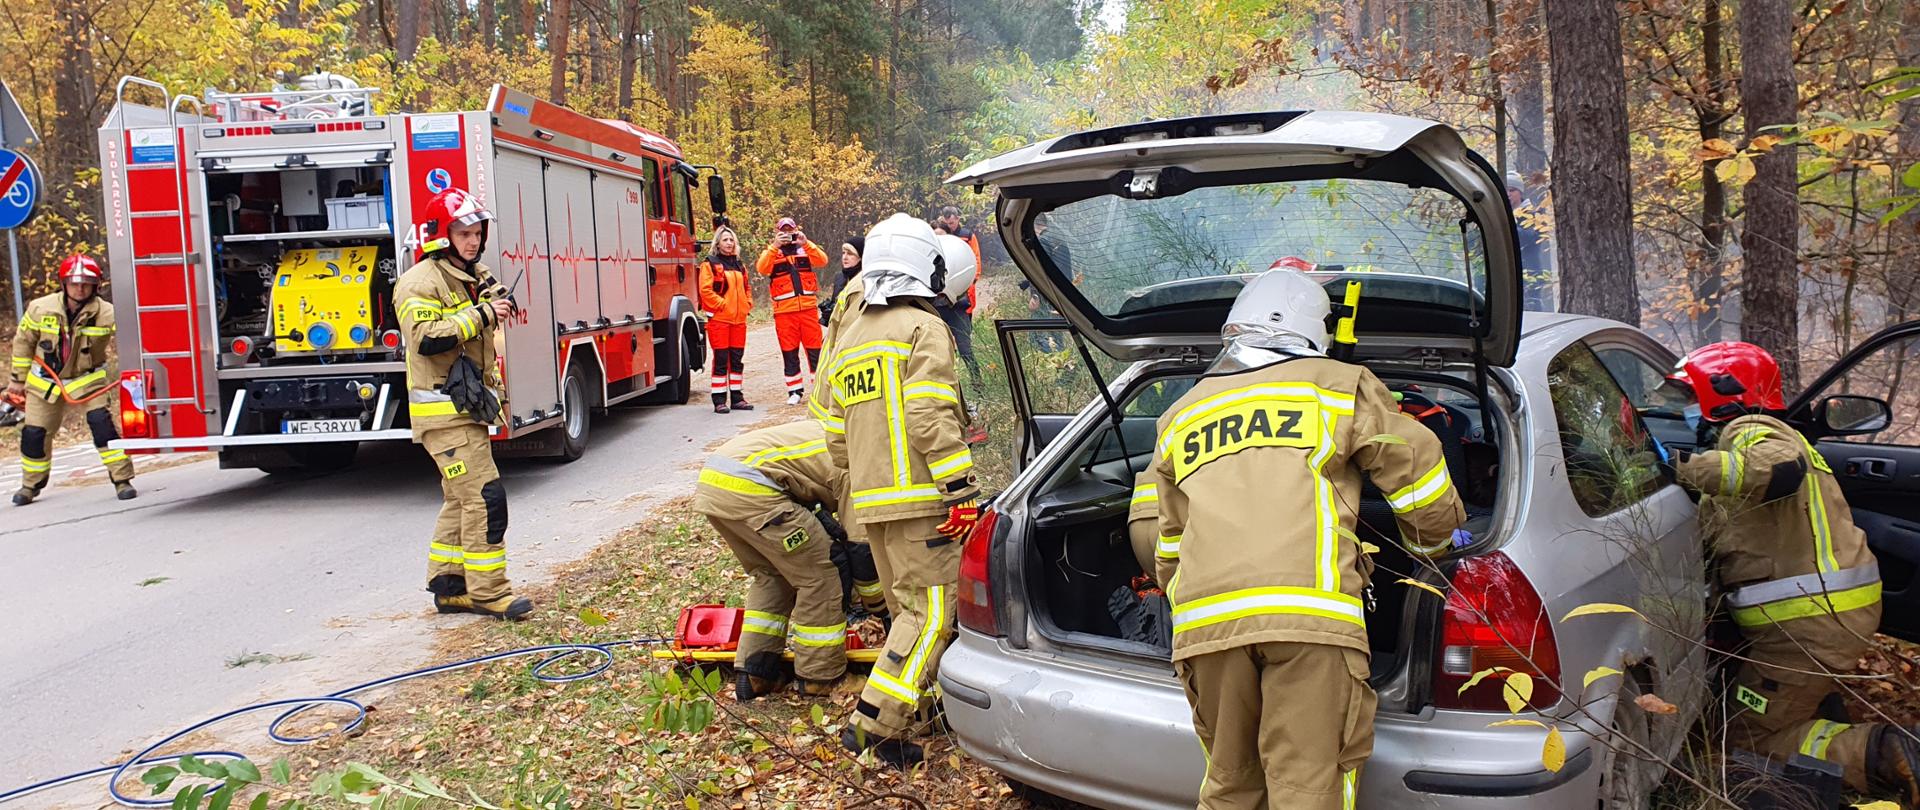 strażacy podczas ćwiczeń na terenie drogi w lesie, czterech strażaków ewakuują poszkodowanego z samochodu po wypadku, dwóch strażaków i dwie osoby ze służb przedmedycznych stoi przy samochodzie pożarniczym